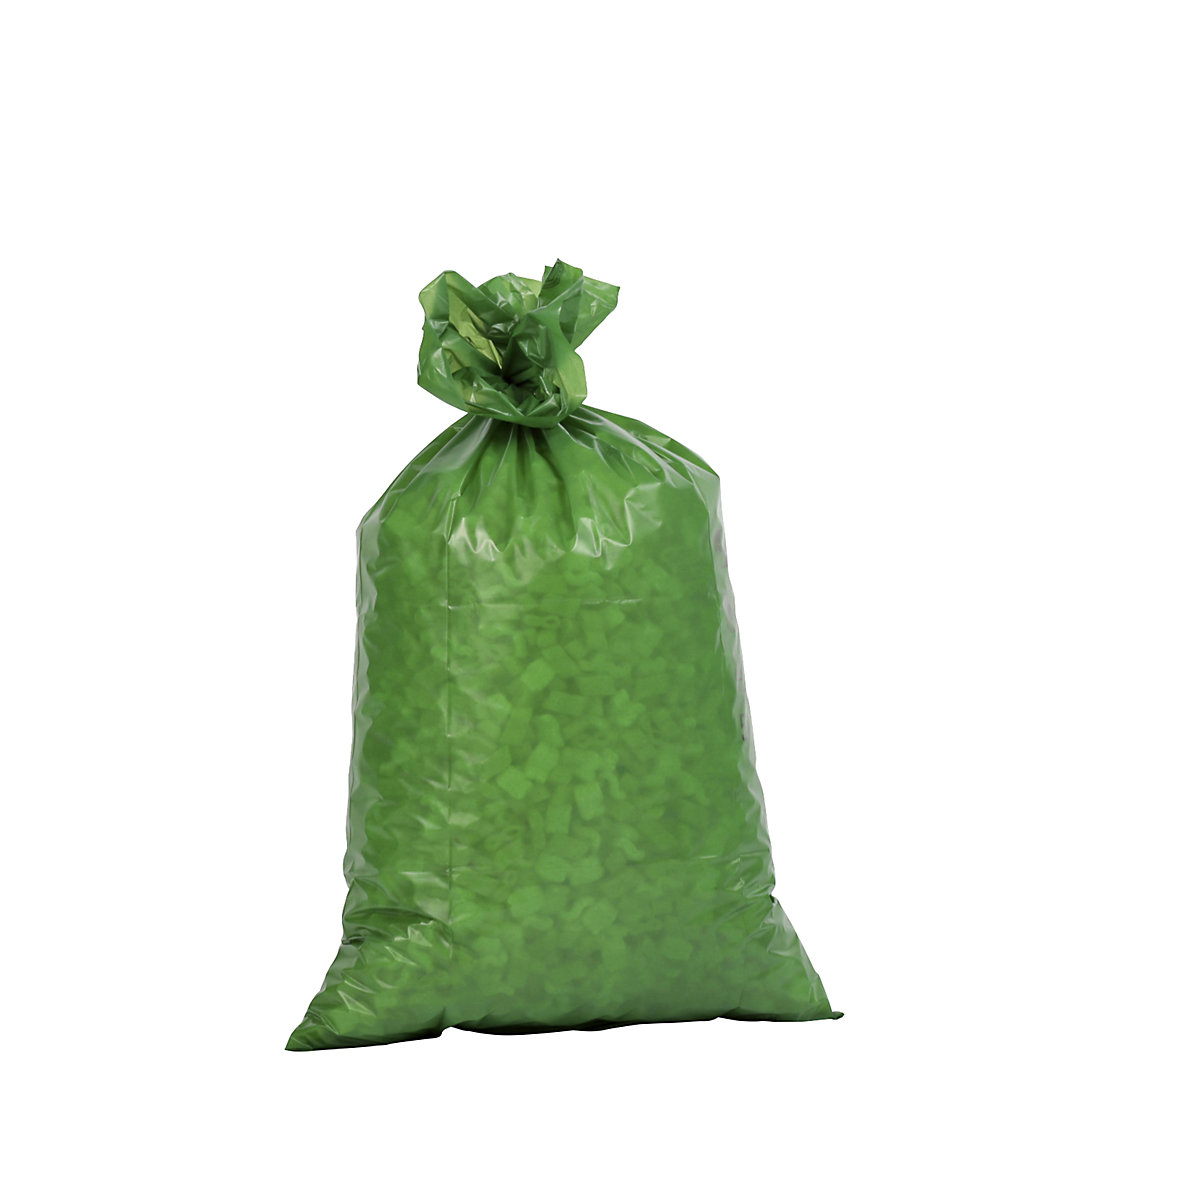 Szabványos hulladékgyűjtő zsákok, LDPE, 70 l, cs. e. 250 db, szé x ma 575 x 1000 mm, anyagvastagság 60 µm, zöld